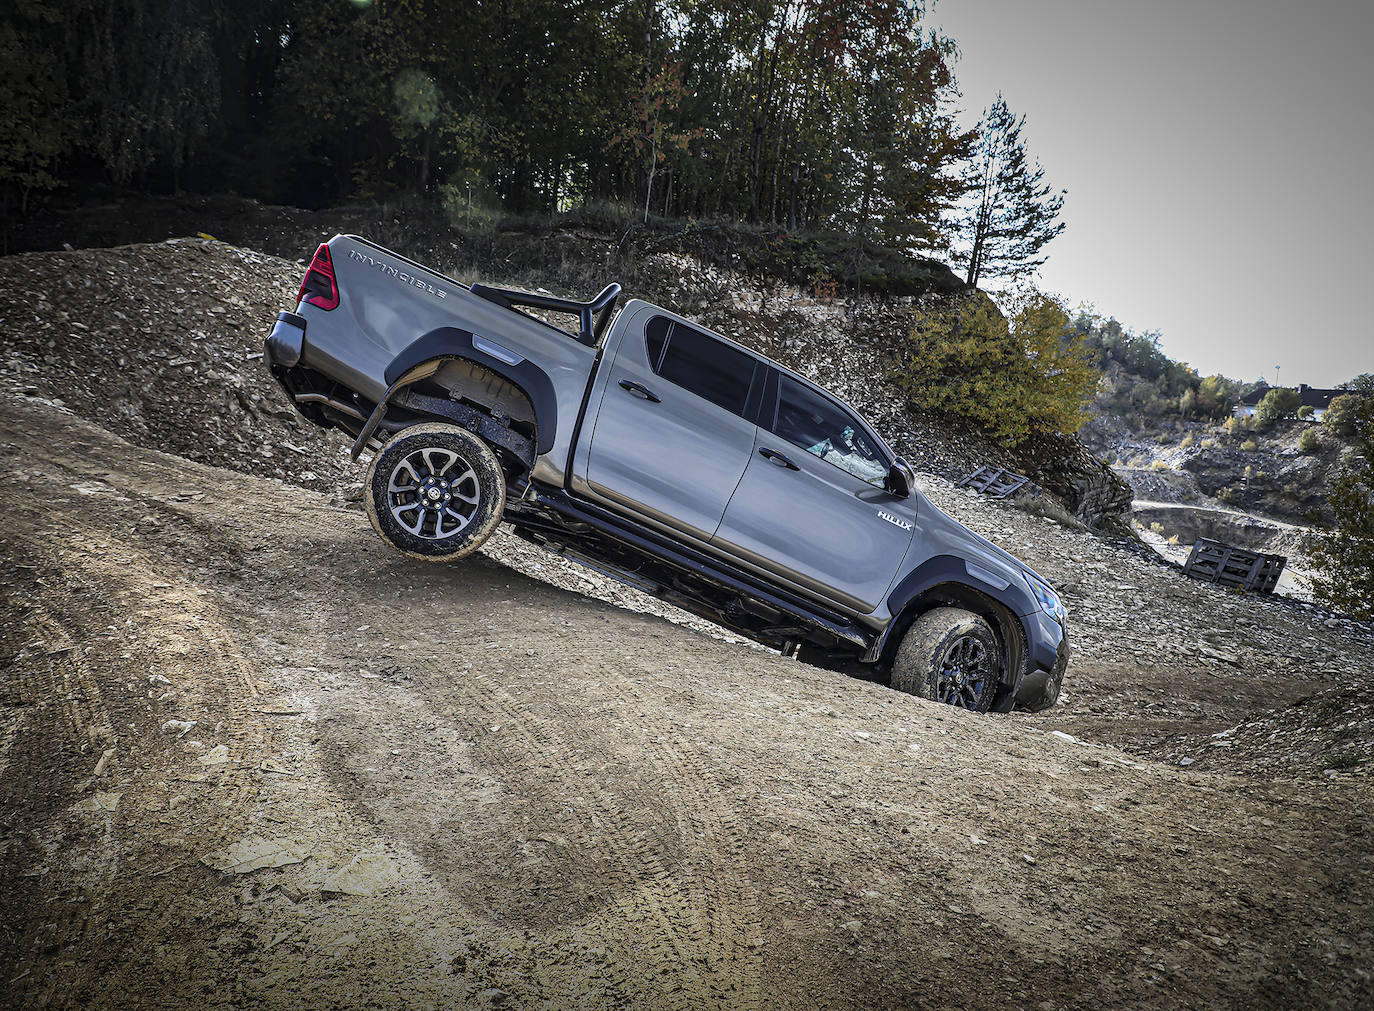 Fotos: Fotogalería: Así es el nuevo Pick-Up Toyota Hilux